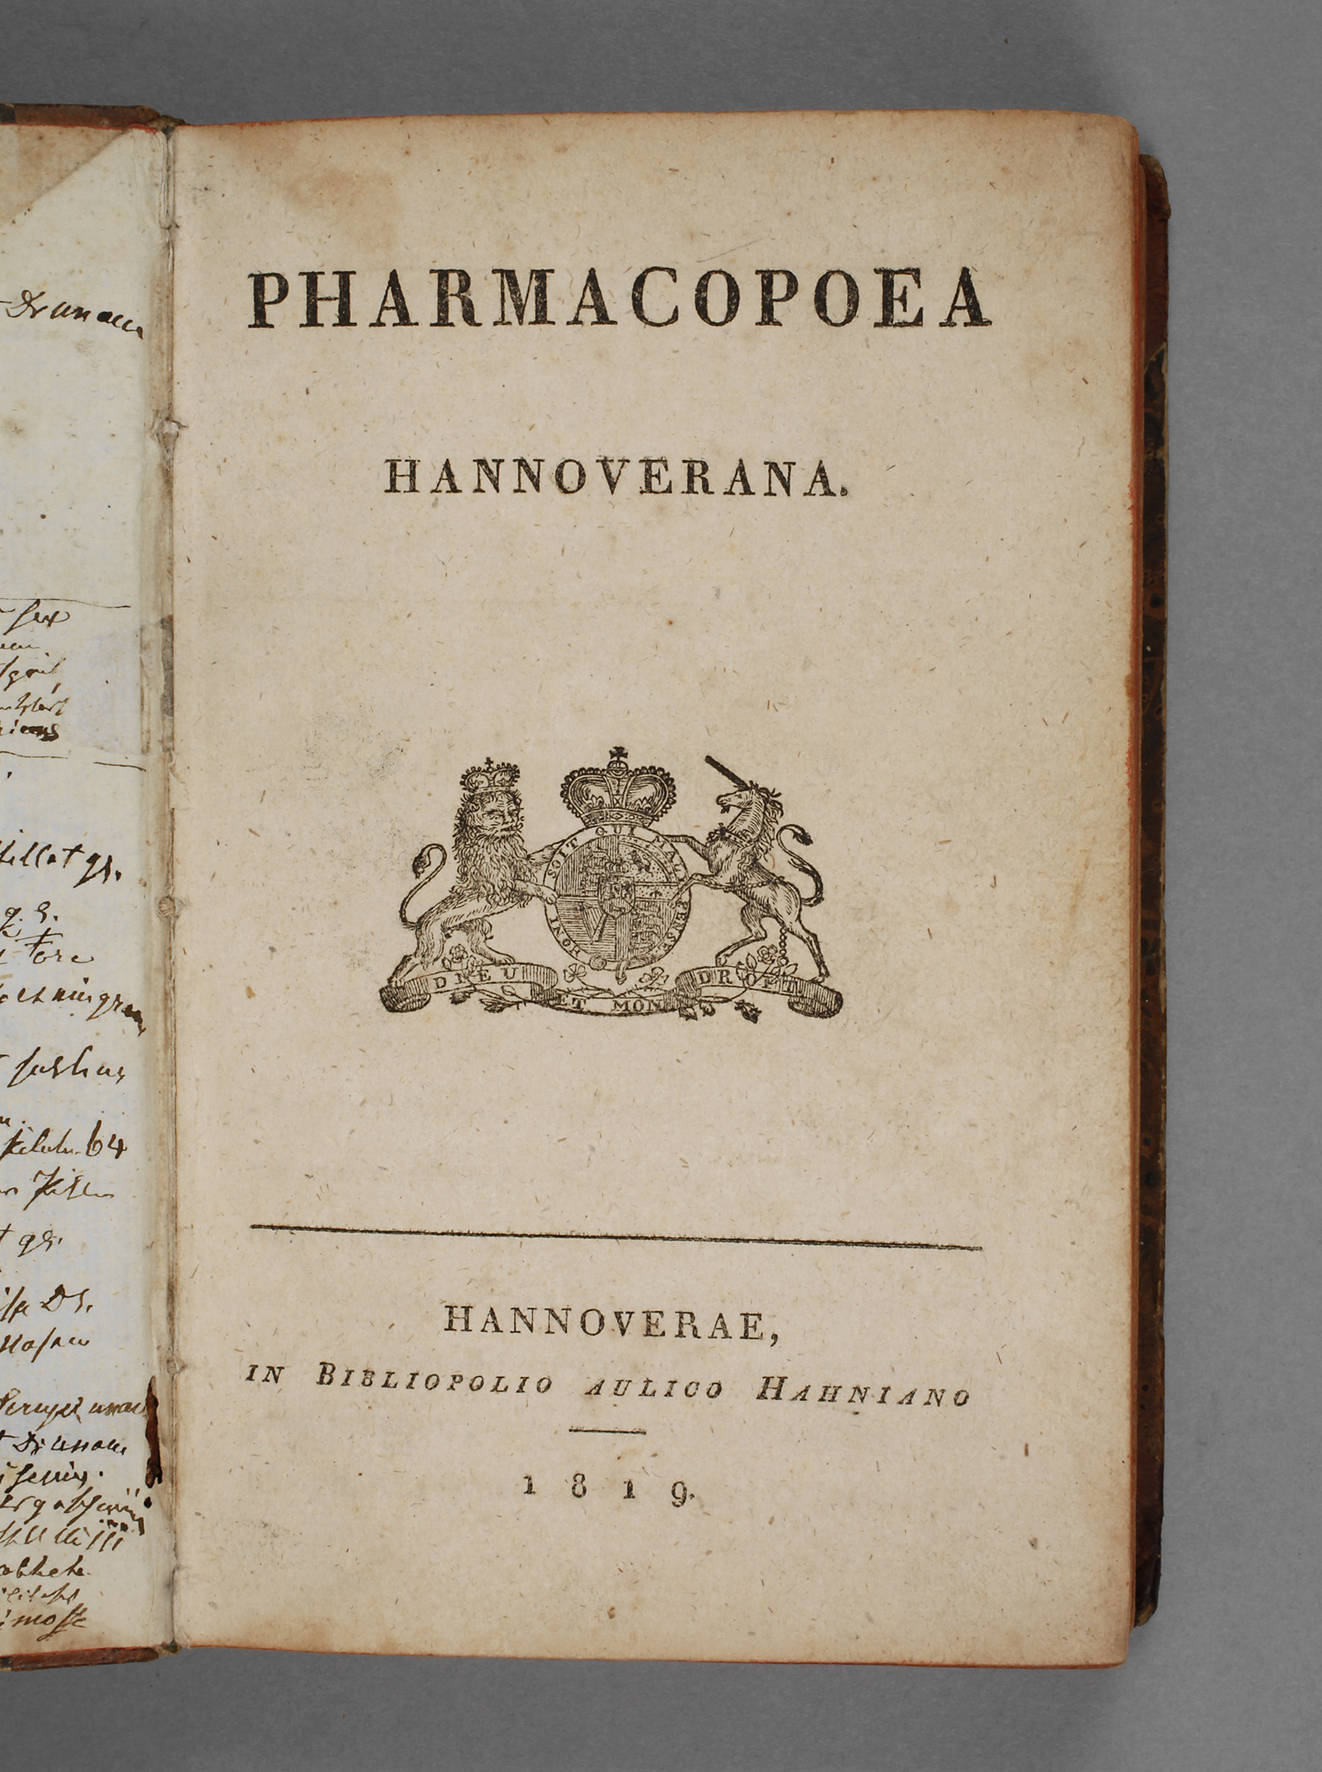 Hannoversche Pharmacopöe 1819